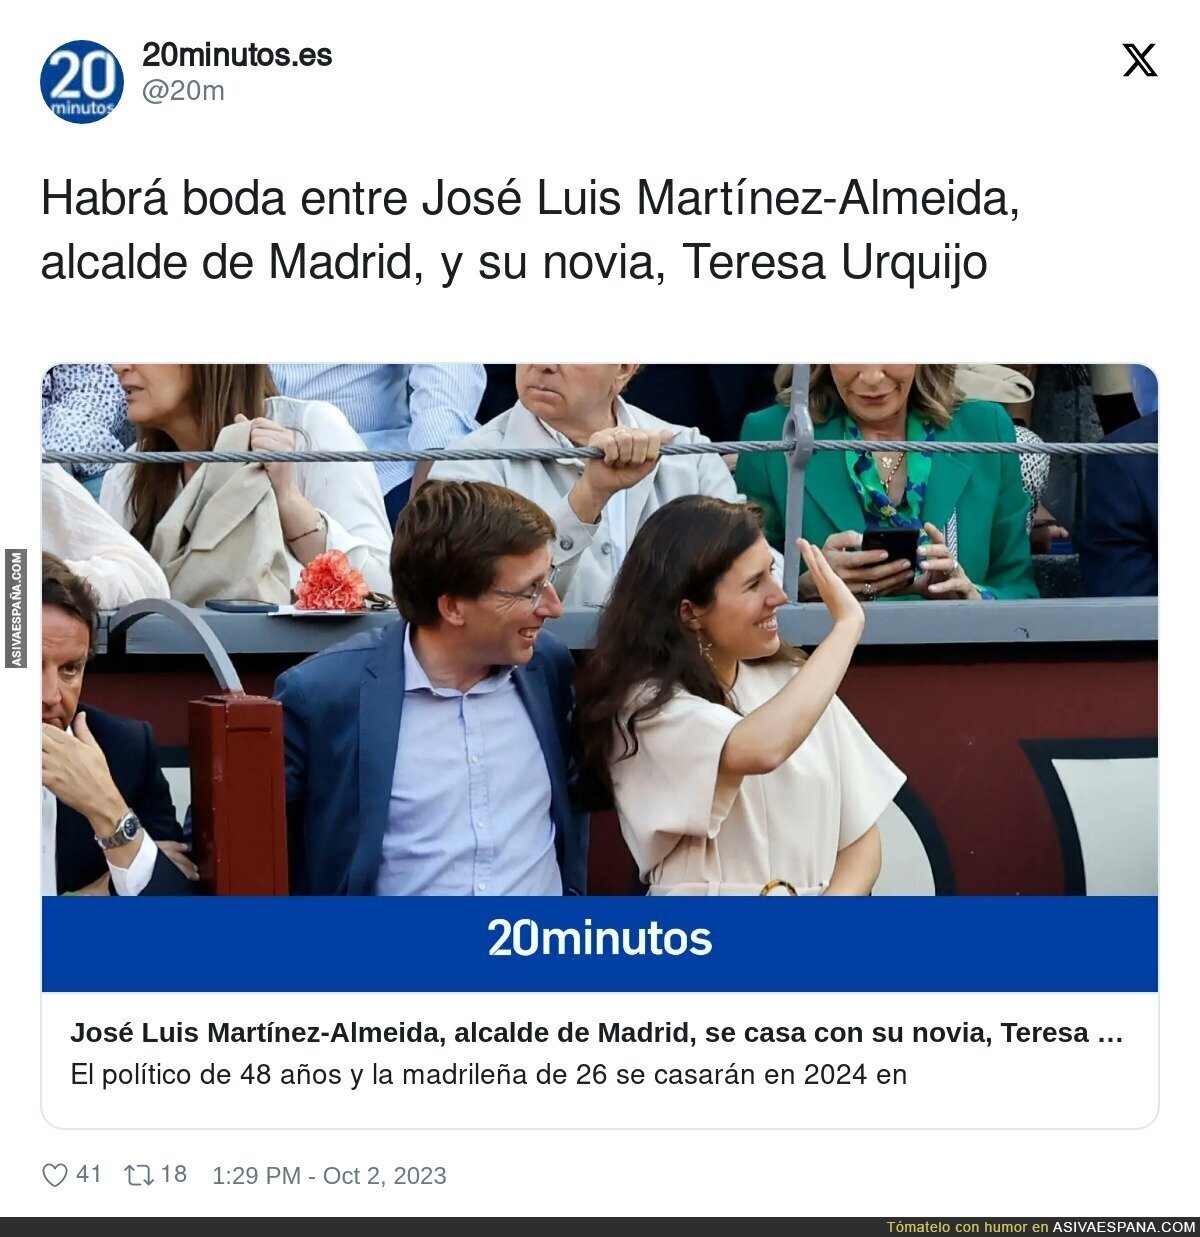 La boda de los Martínez-Almeida Urquijo